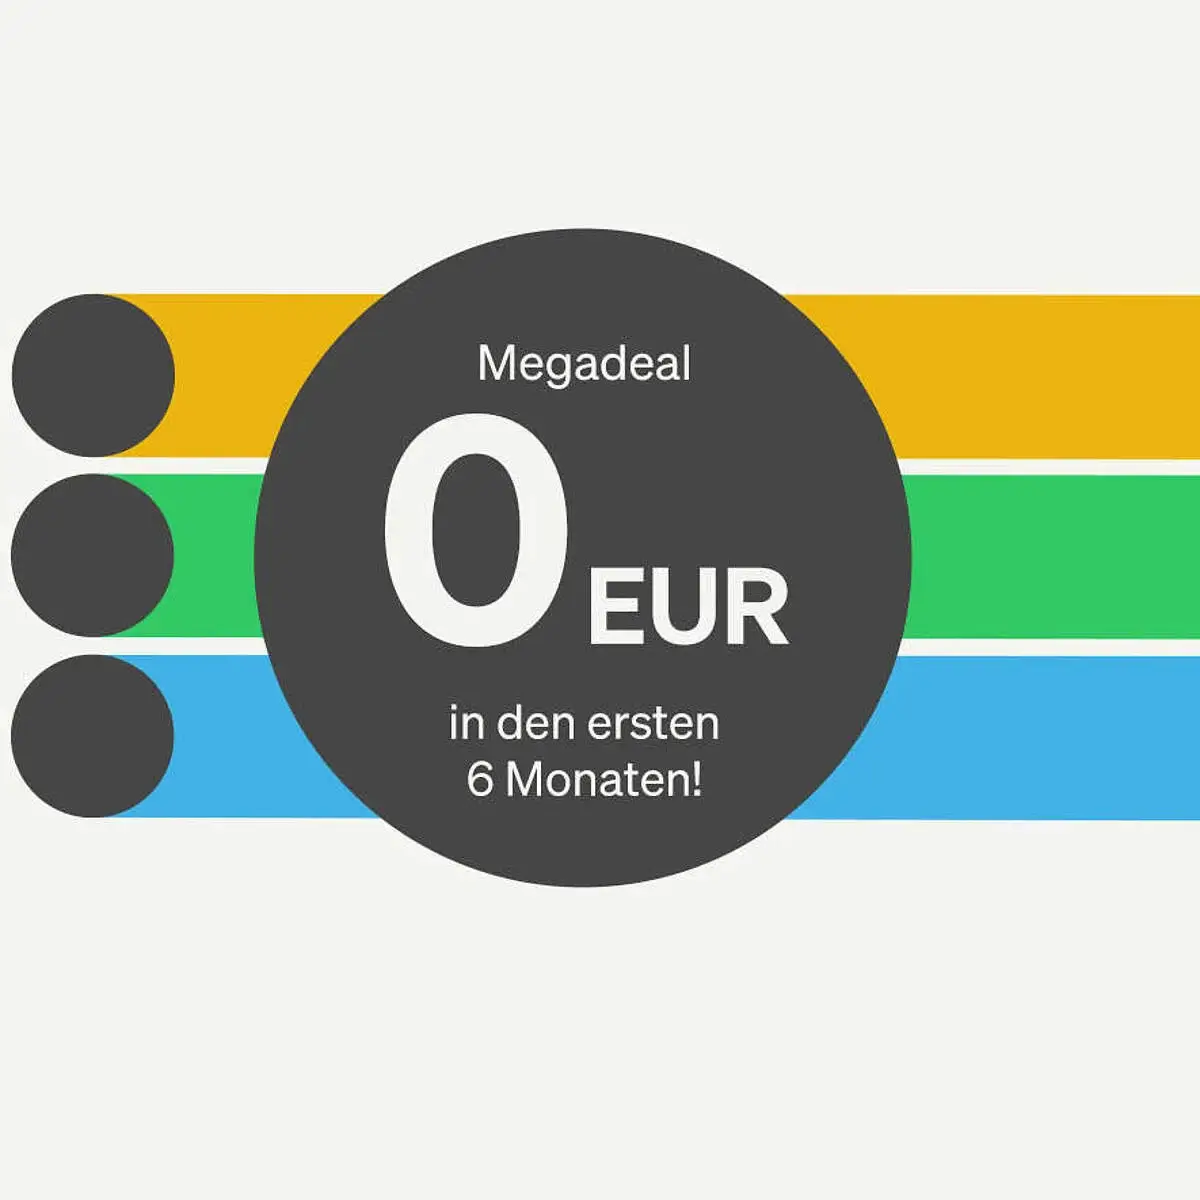 weißer Hintergrund, mittig 3 Steifen in orange, grün, blau, mit duklem Pnkt links, darüber dunkler Kreis mit Schrift: Megadeal 0 Eur in den ersten 6 Monaten